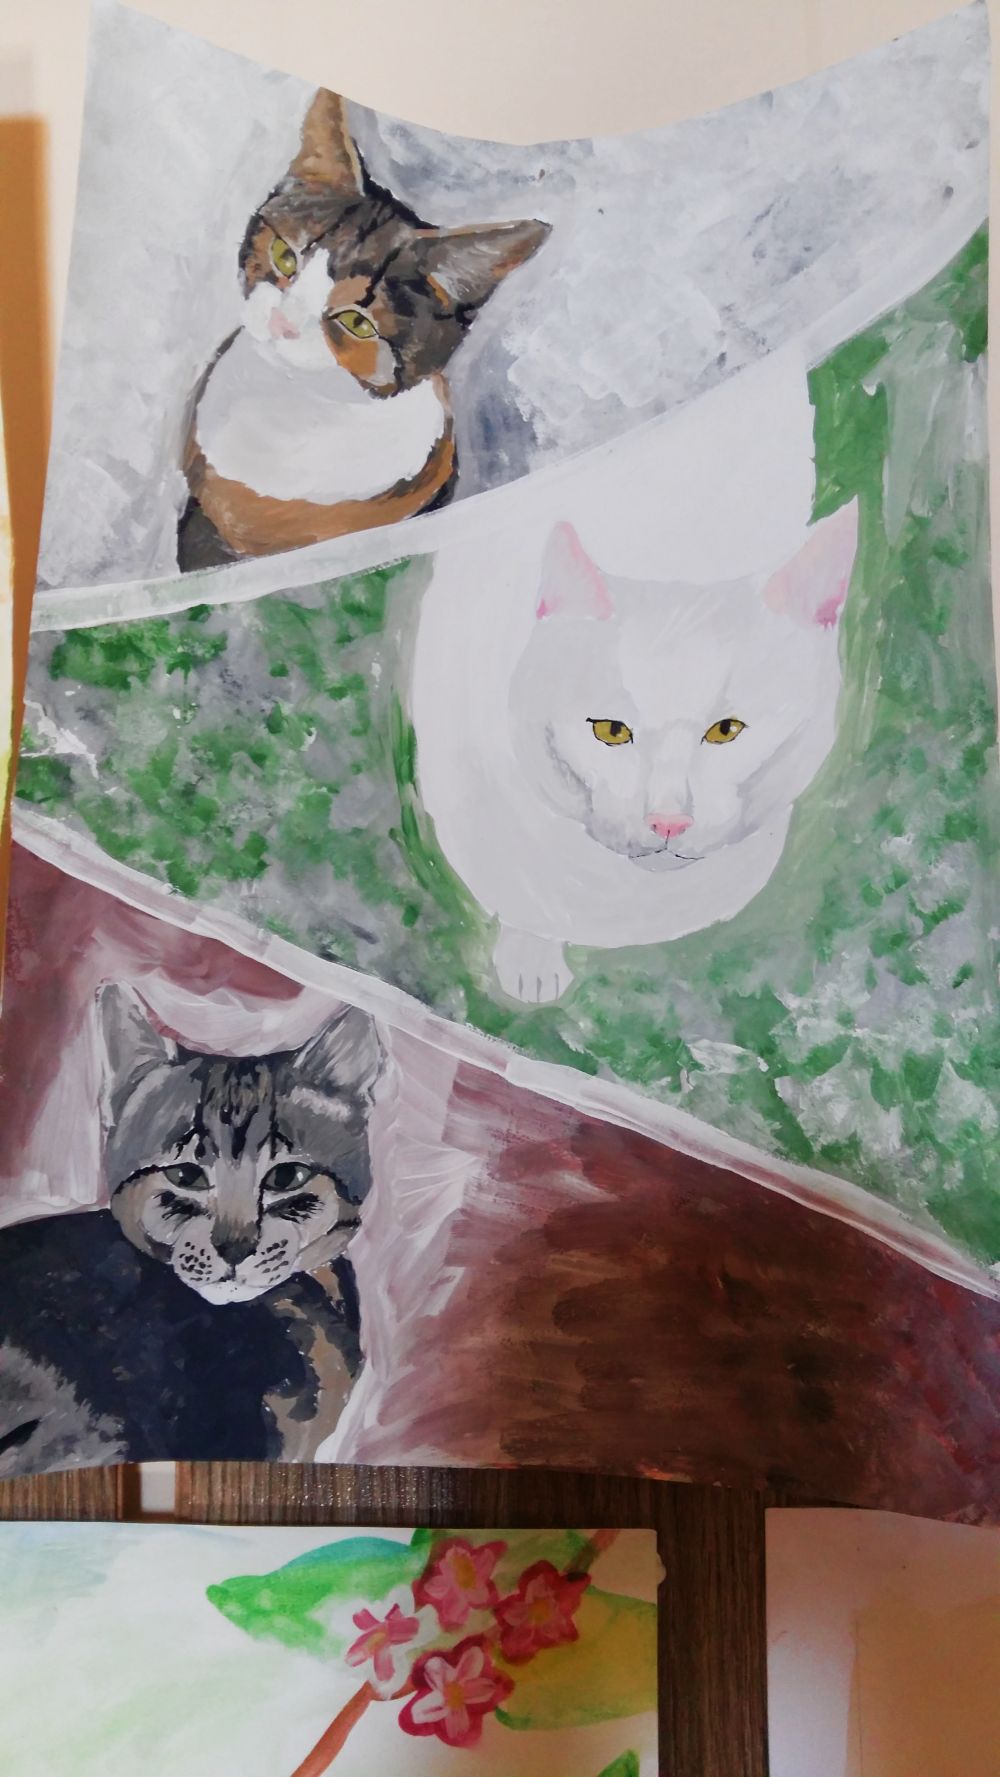 Ievai ļoti patīk zīmēt savus 3 kaķus. Kad mācījusies 5.klasē, mīļajam Pūpolam sacerējusi dzejoli.